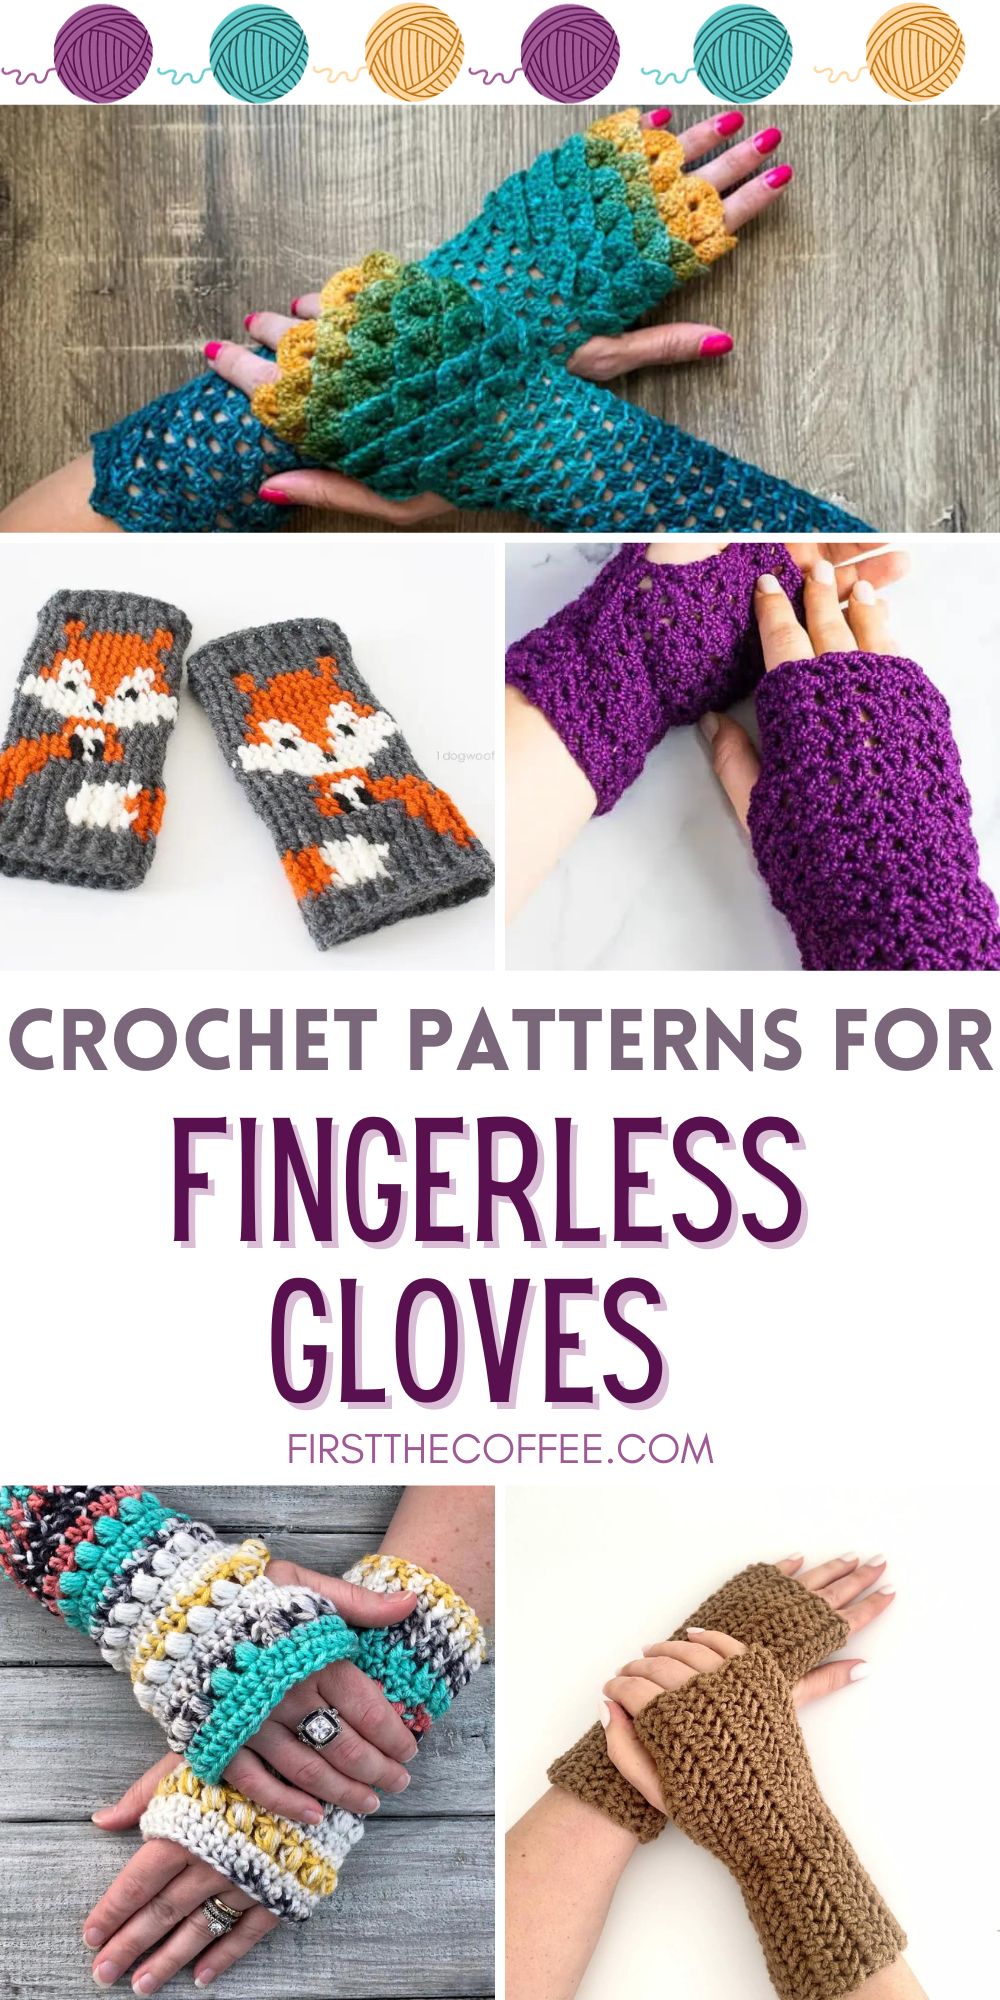 Crochet Patterns for Fingerless Gloves